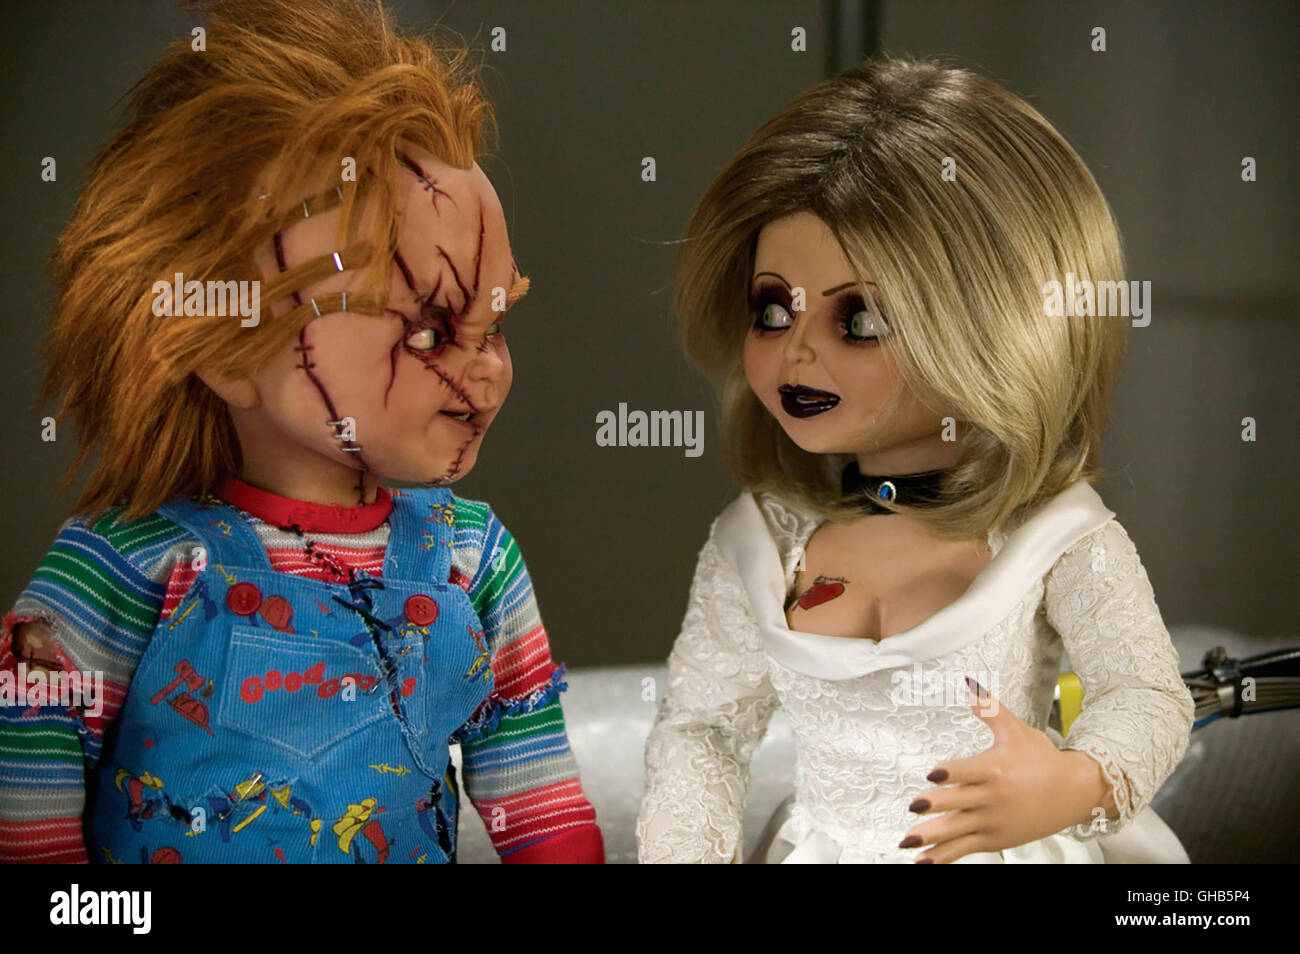 Katil Oyuncak Bebek Chucky Ye Odaklanan Dizi Syfy Kanalindan Ilk Sezon Onayi Aldi Filmloverss